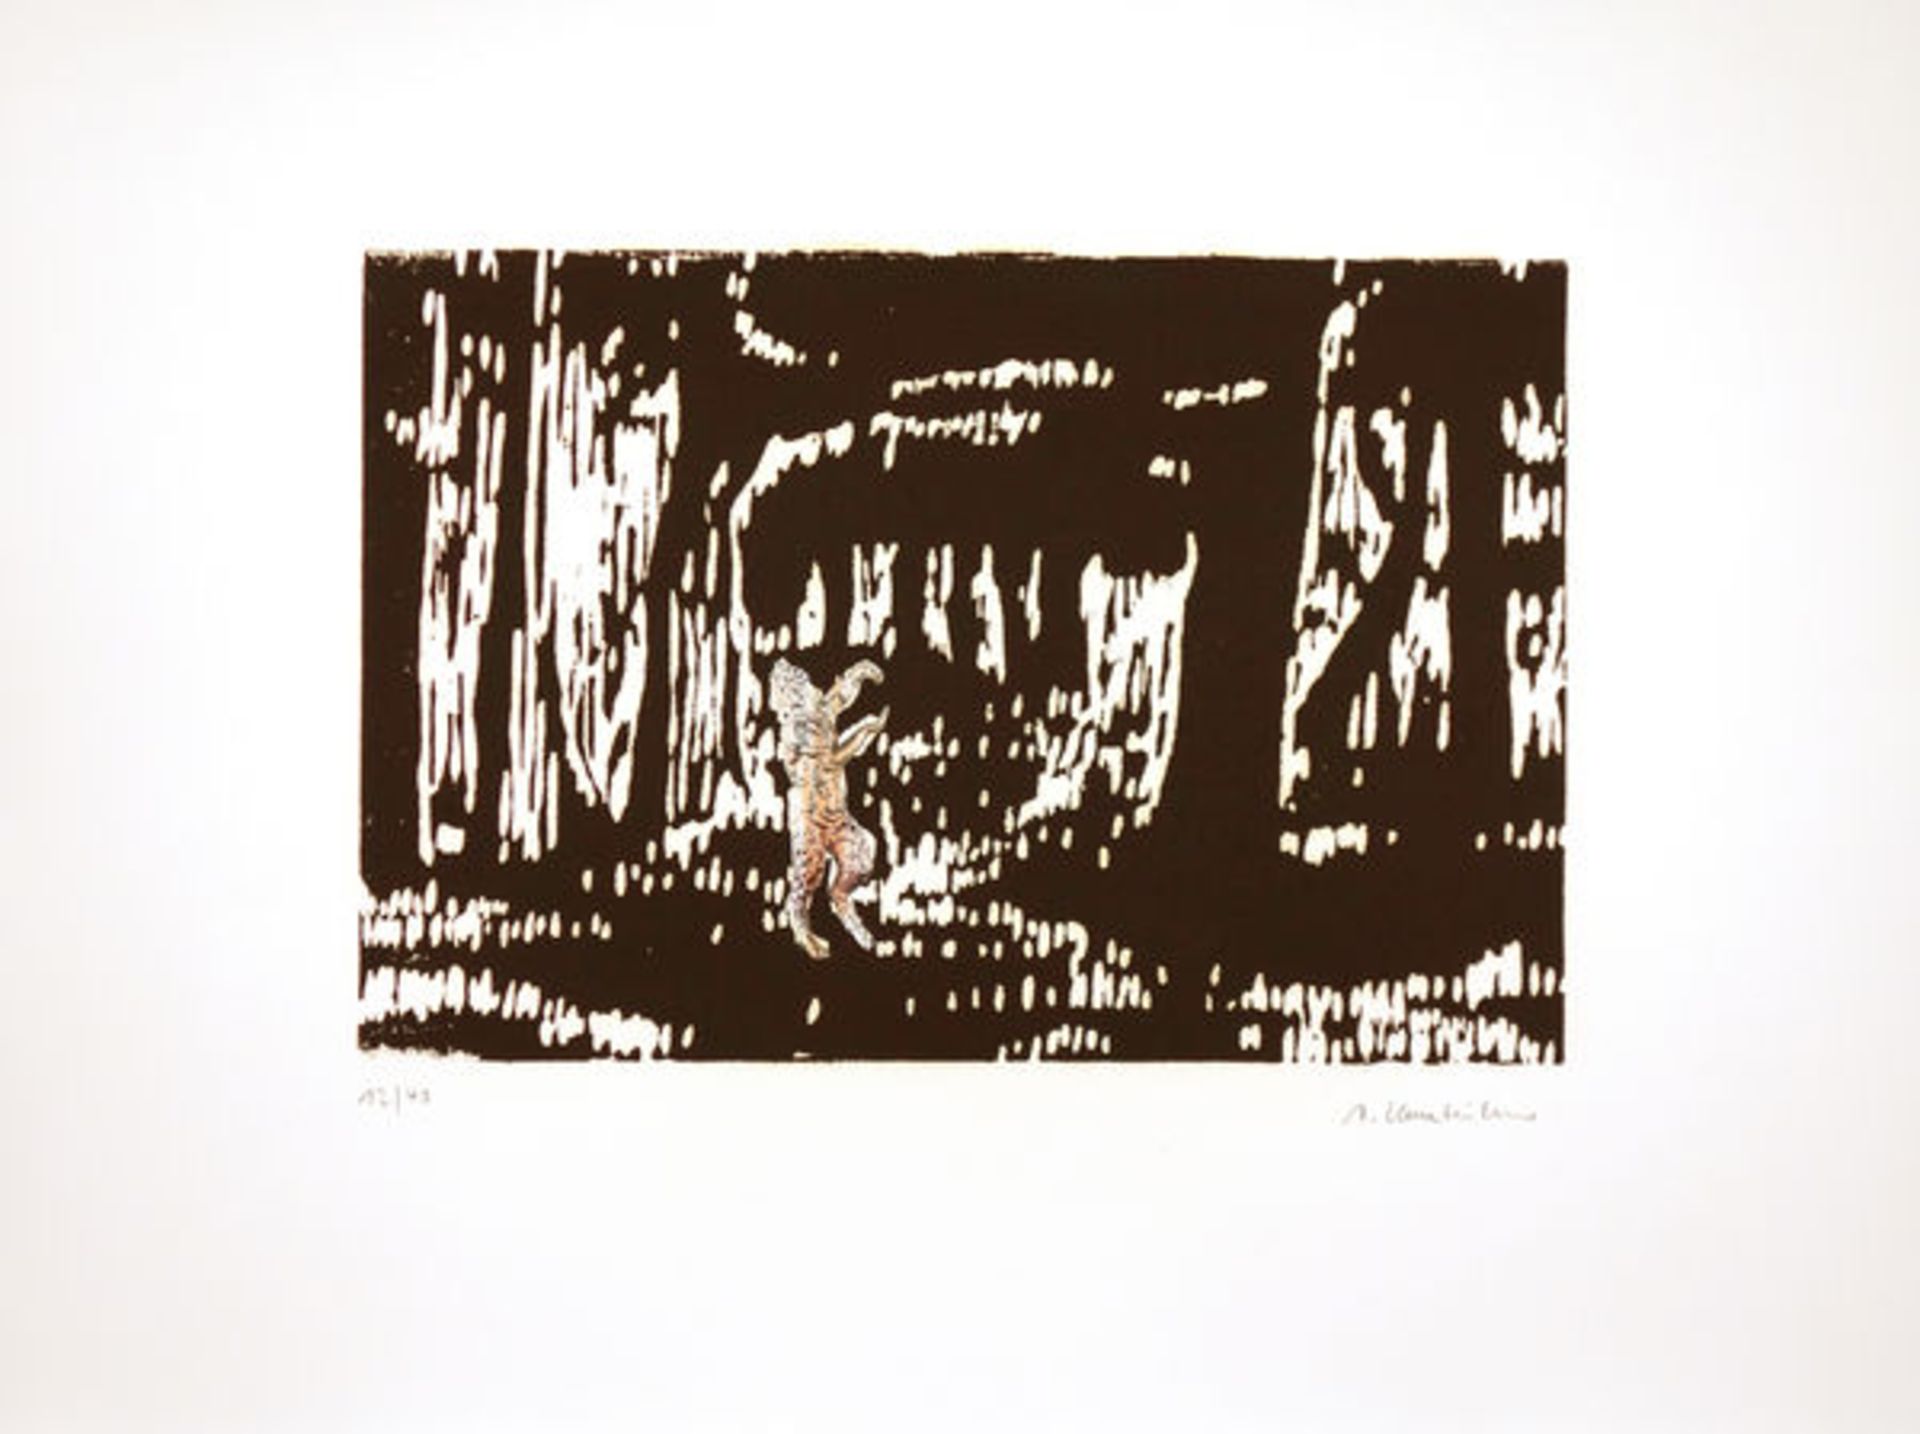 Kasseböhmer, AxelCollage auf Linolschnitt geklebt auf Bütten, 25,3 x 37,7 cmLandschaft mit Faun (